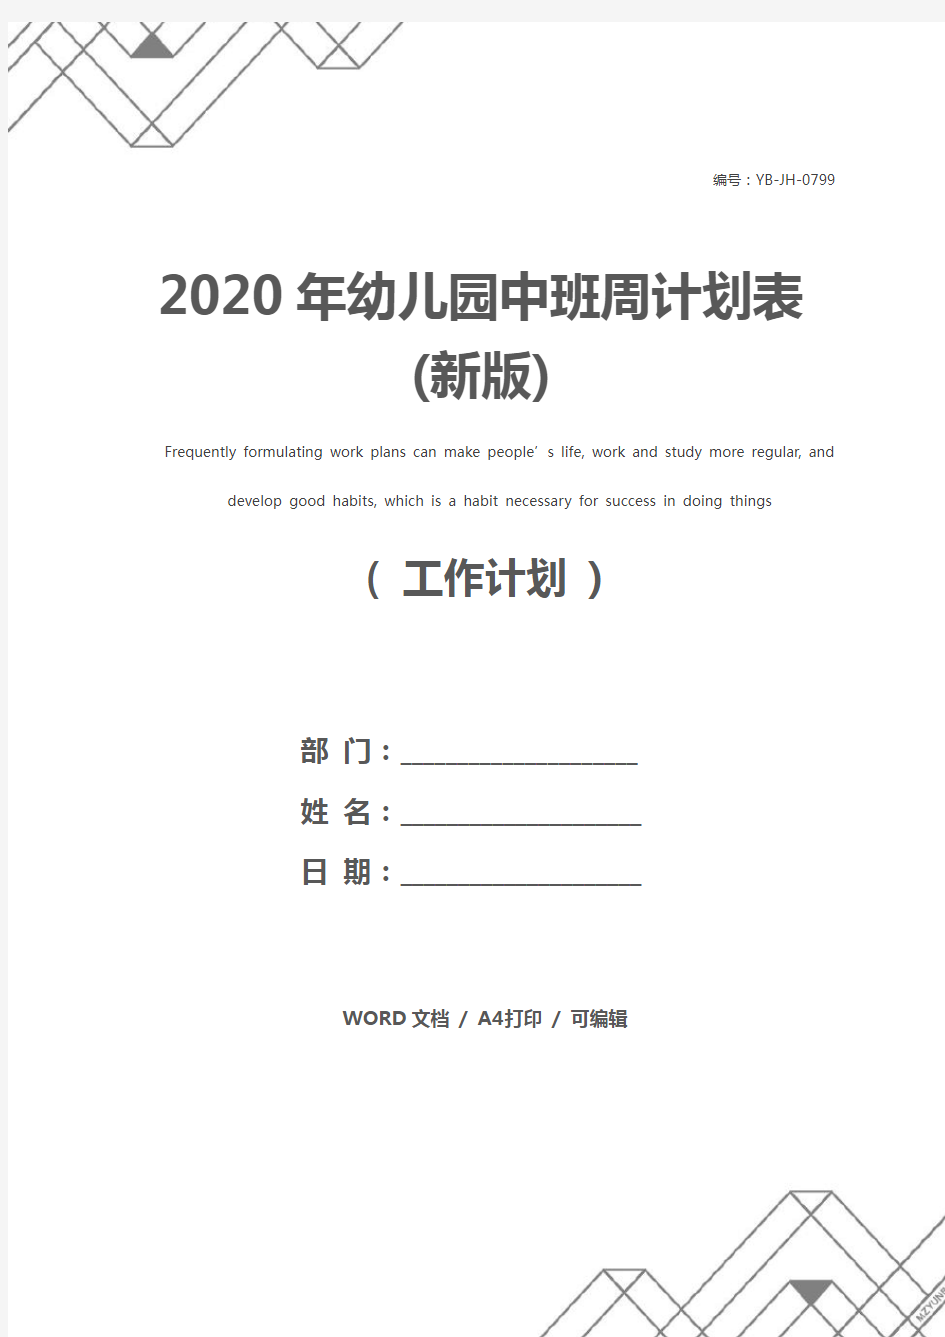 2020年幼儿园中班周计划表(新版)